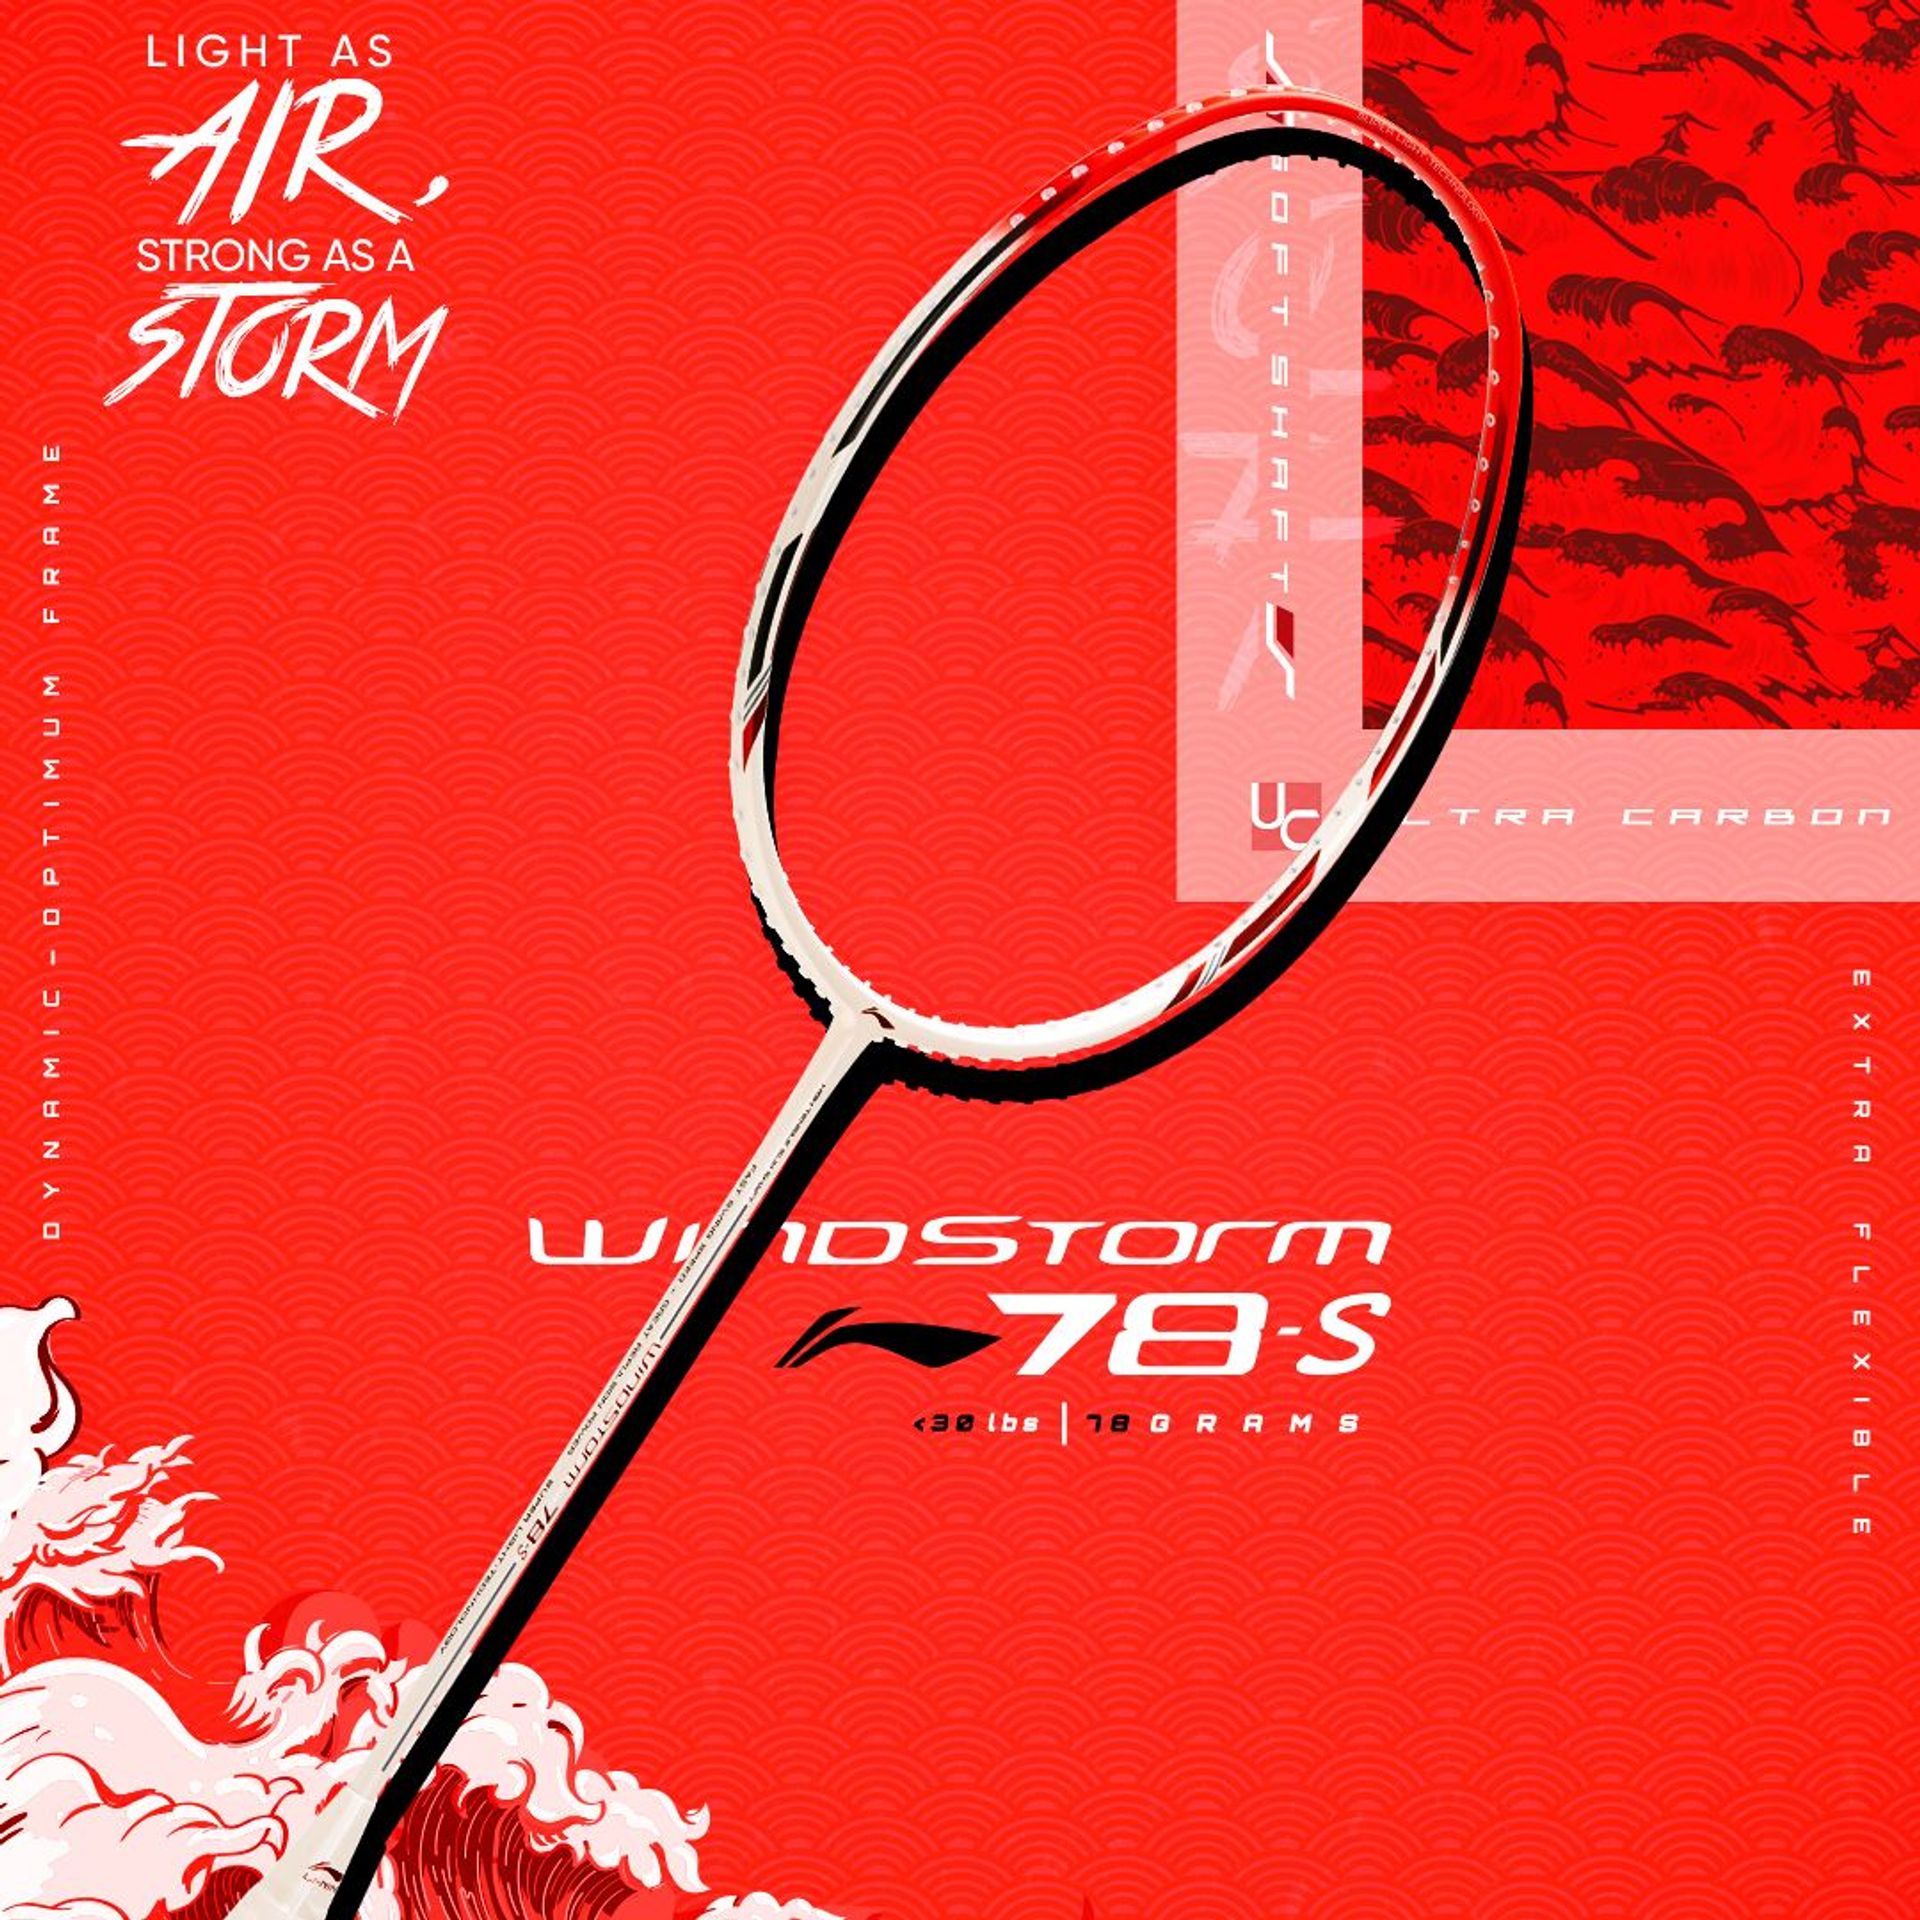 Windstorm 78s Badminton Racket